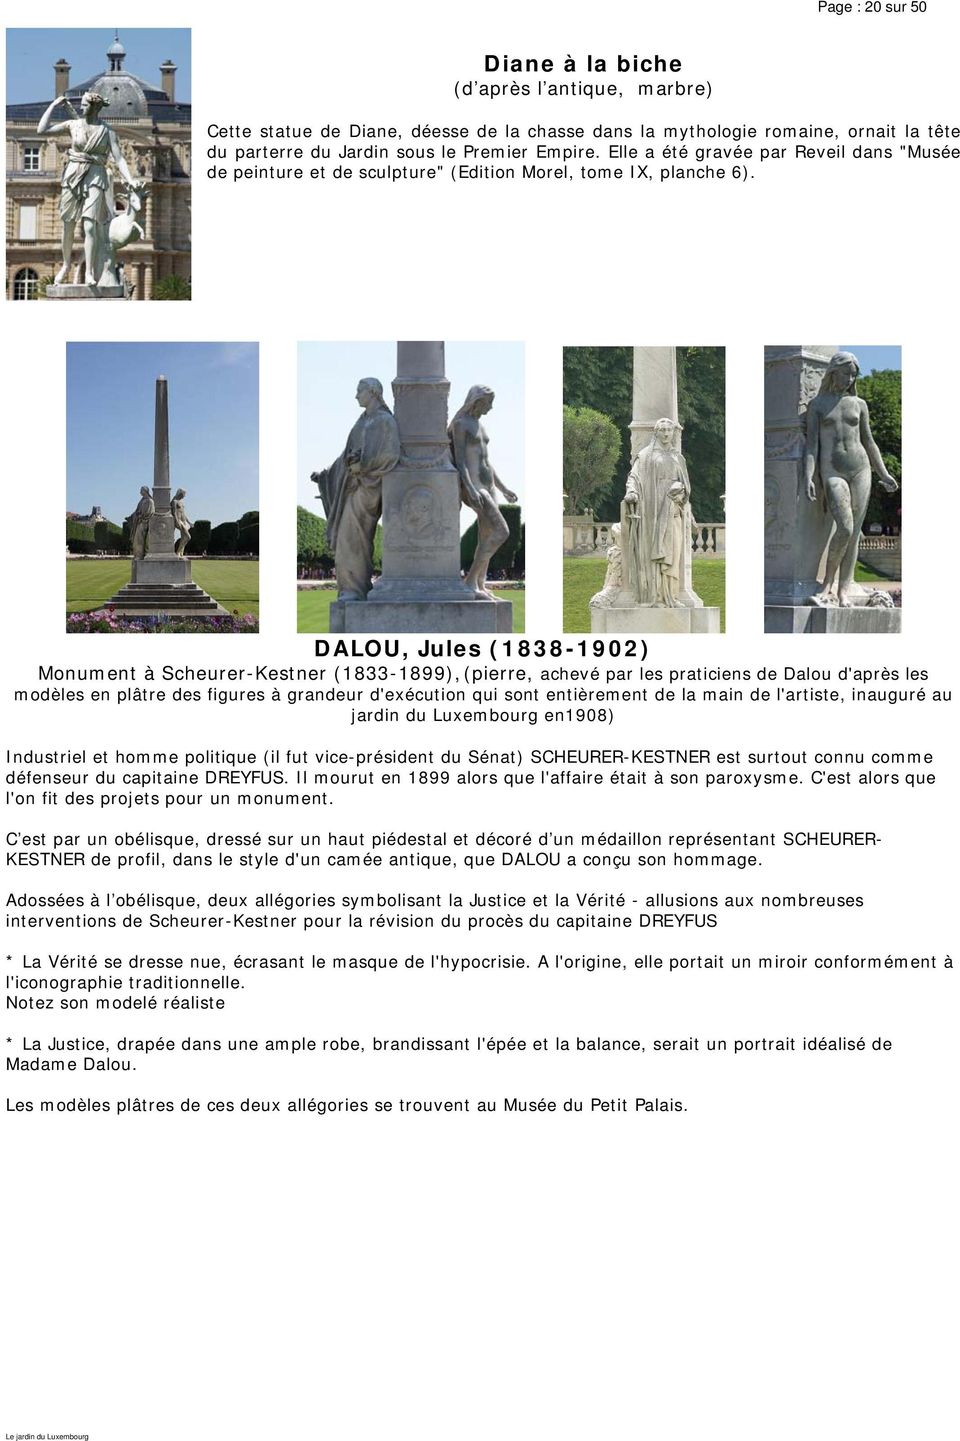 DALOU, Jules (1838-1902) Monument à Scheurer-Kestner (1833-1899), (pierre, achevé par les praticiens de Dalou d'après les modèles en plâtre des figures à grandeur d'exécution qui sont entièrement de